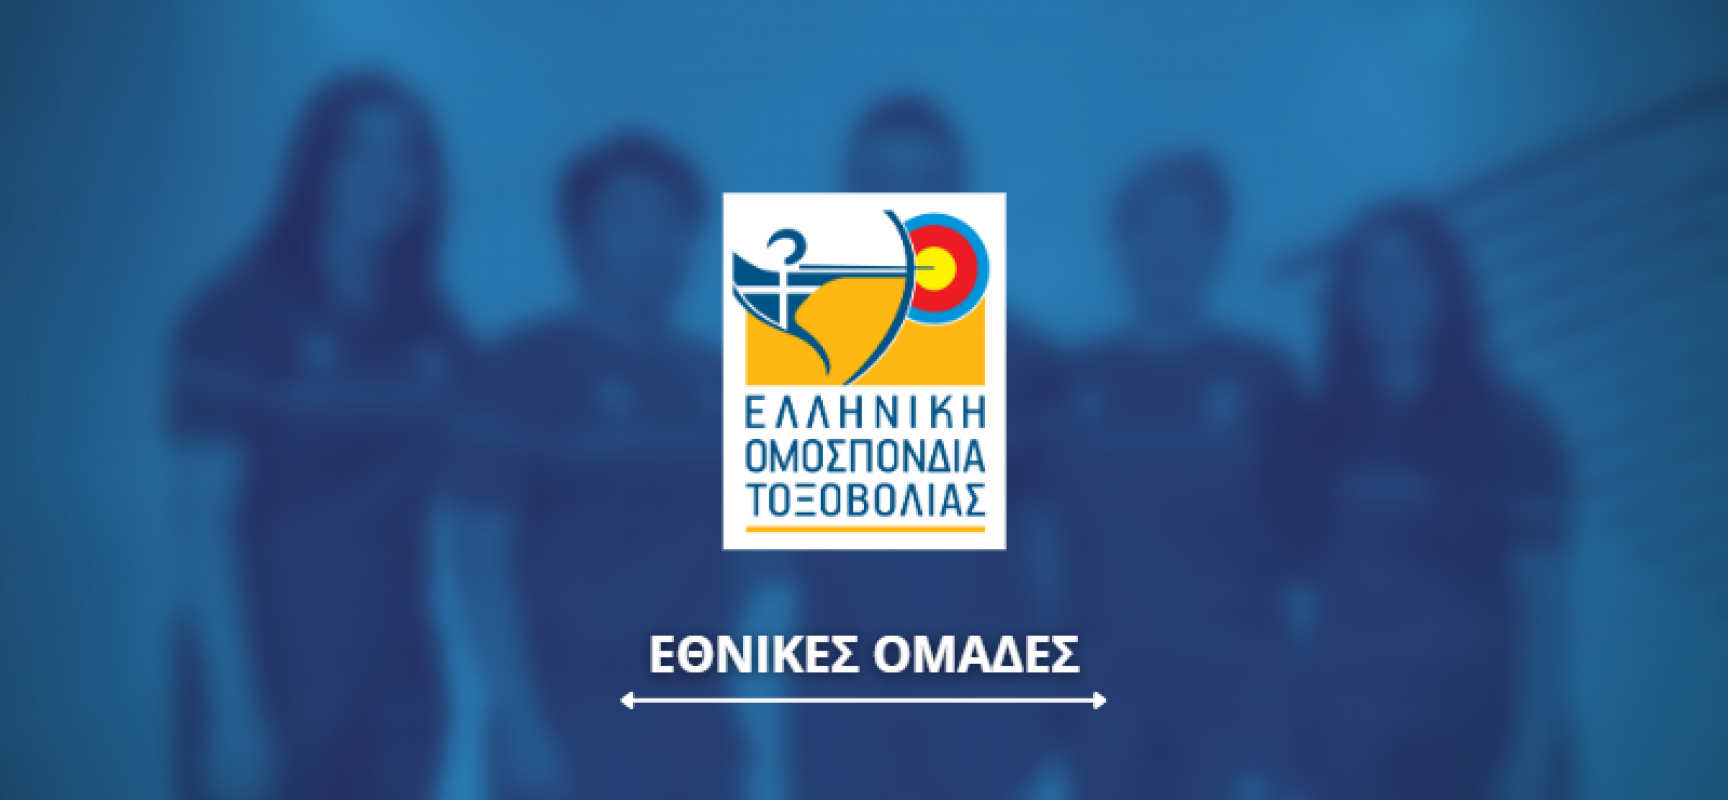 Έναρξη αγωνιστικών υποχρεώσεων της Ελληνικής αποστολής στο Παρίσι (Hyundai Archery World Cup -Stage 4)